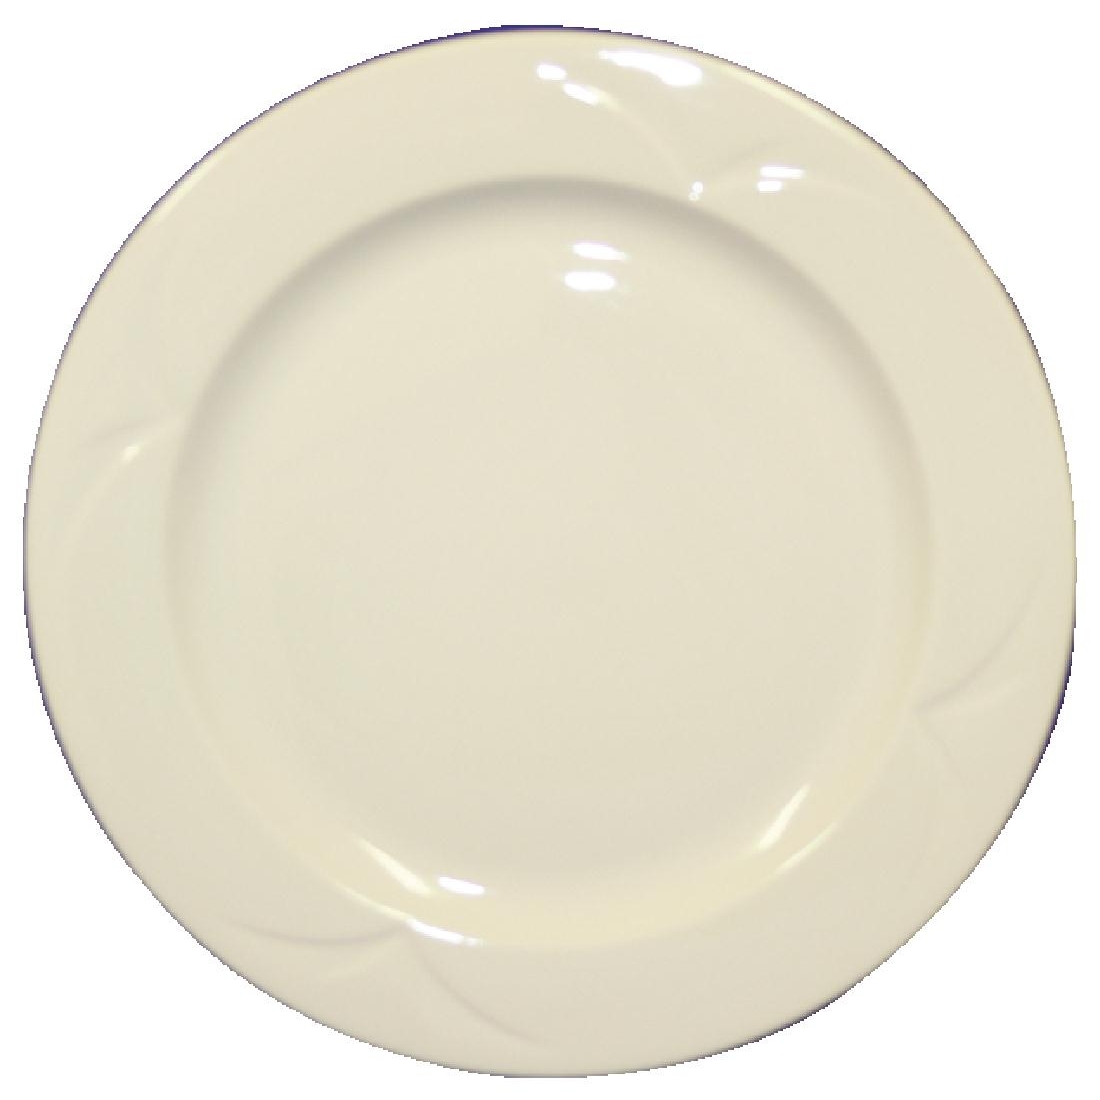 Steelite Bianco Round Plates 230mm